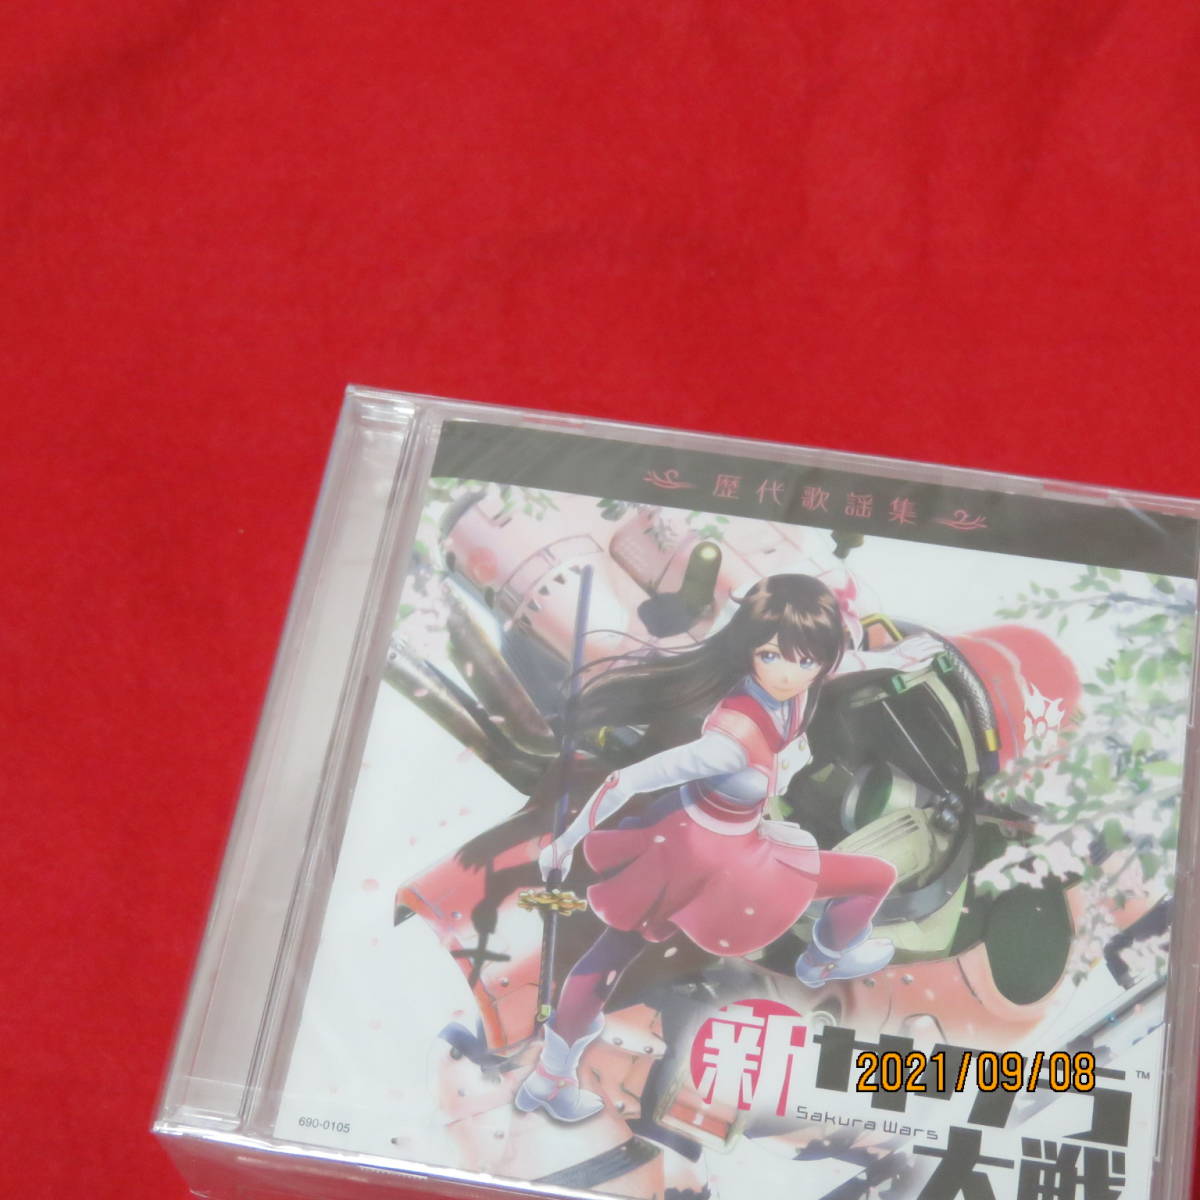  новый Sakura Taisen первый раз ограниченая версия привилегия история плата песня сборник игра CD новый Sakura Taisen история плата песня сборник 6 шт. комплект 21.9.9